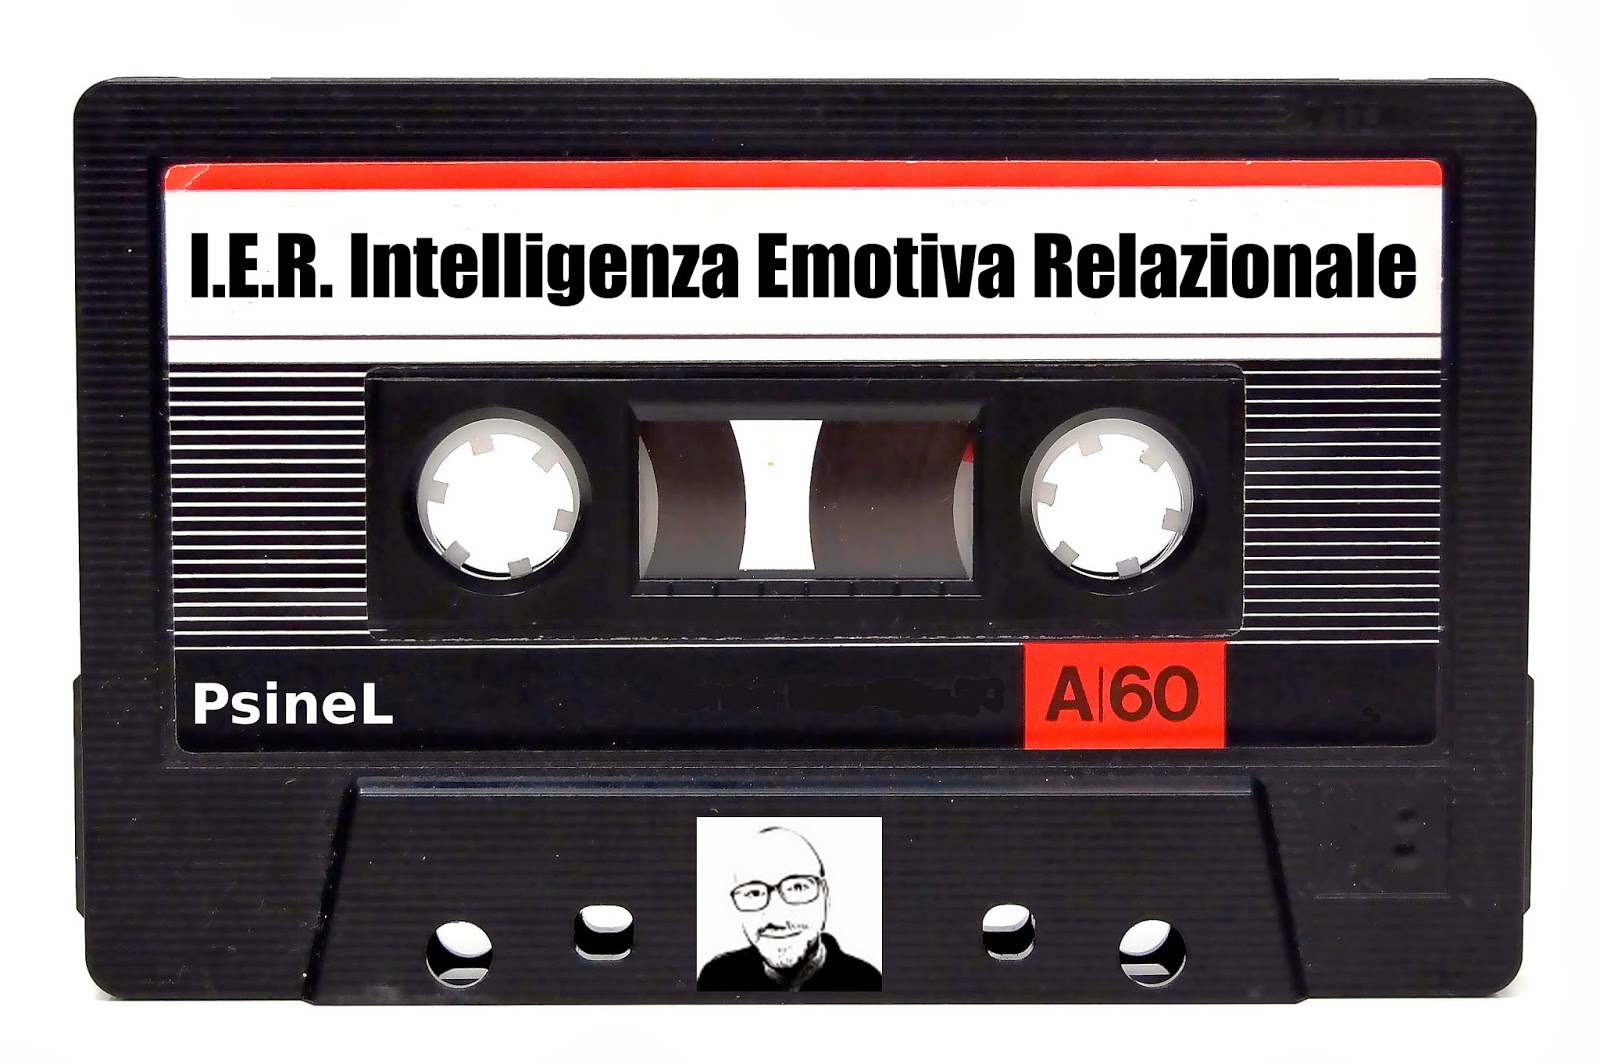 Come coltivare l’intelligenza emotiva relazionale (IER)